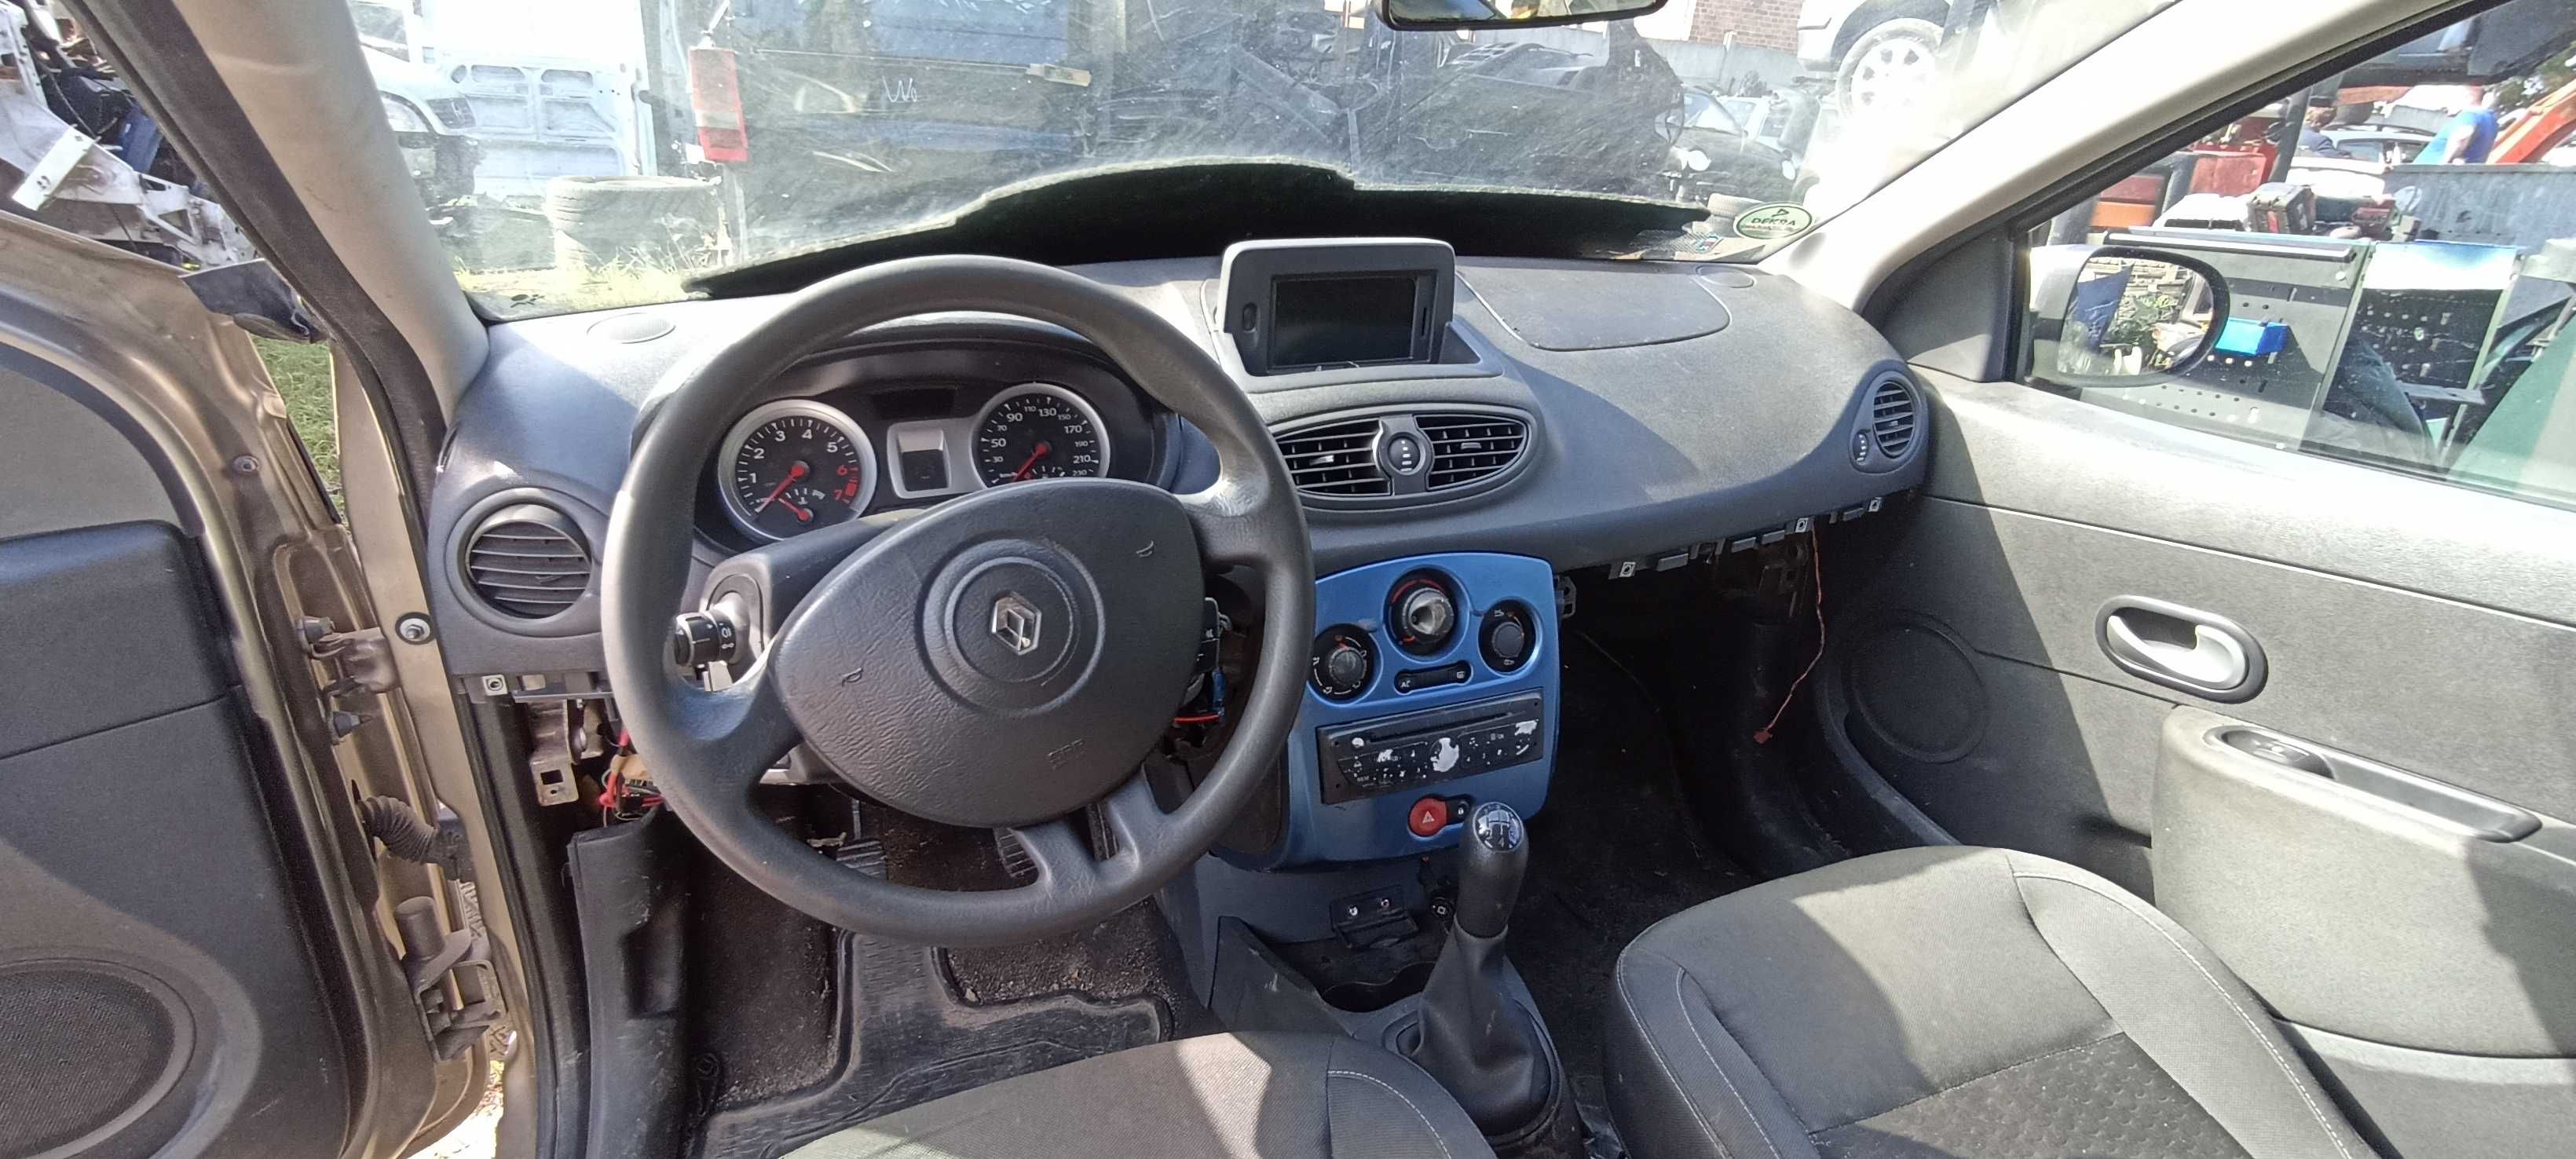 airbag pasy zaślepka sensor  clio III 11R  zestaw